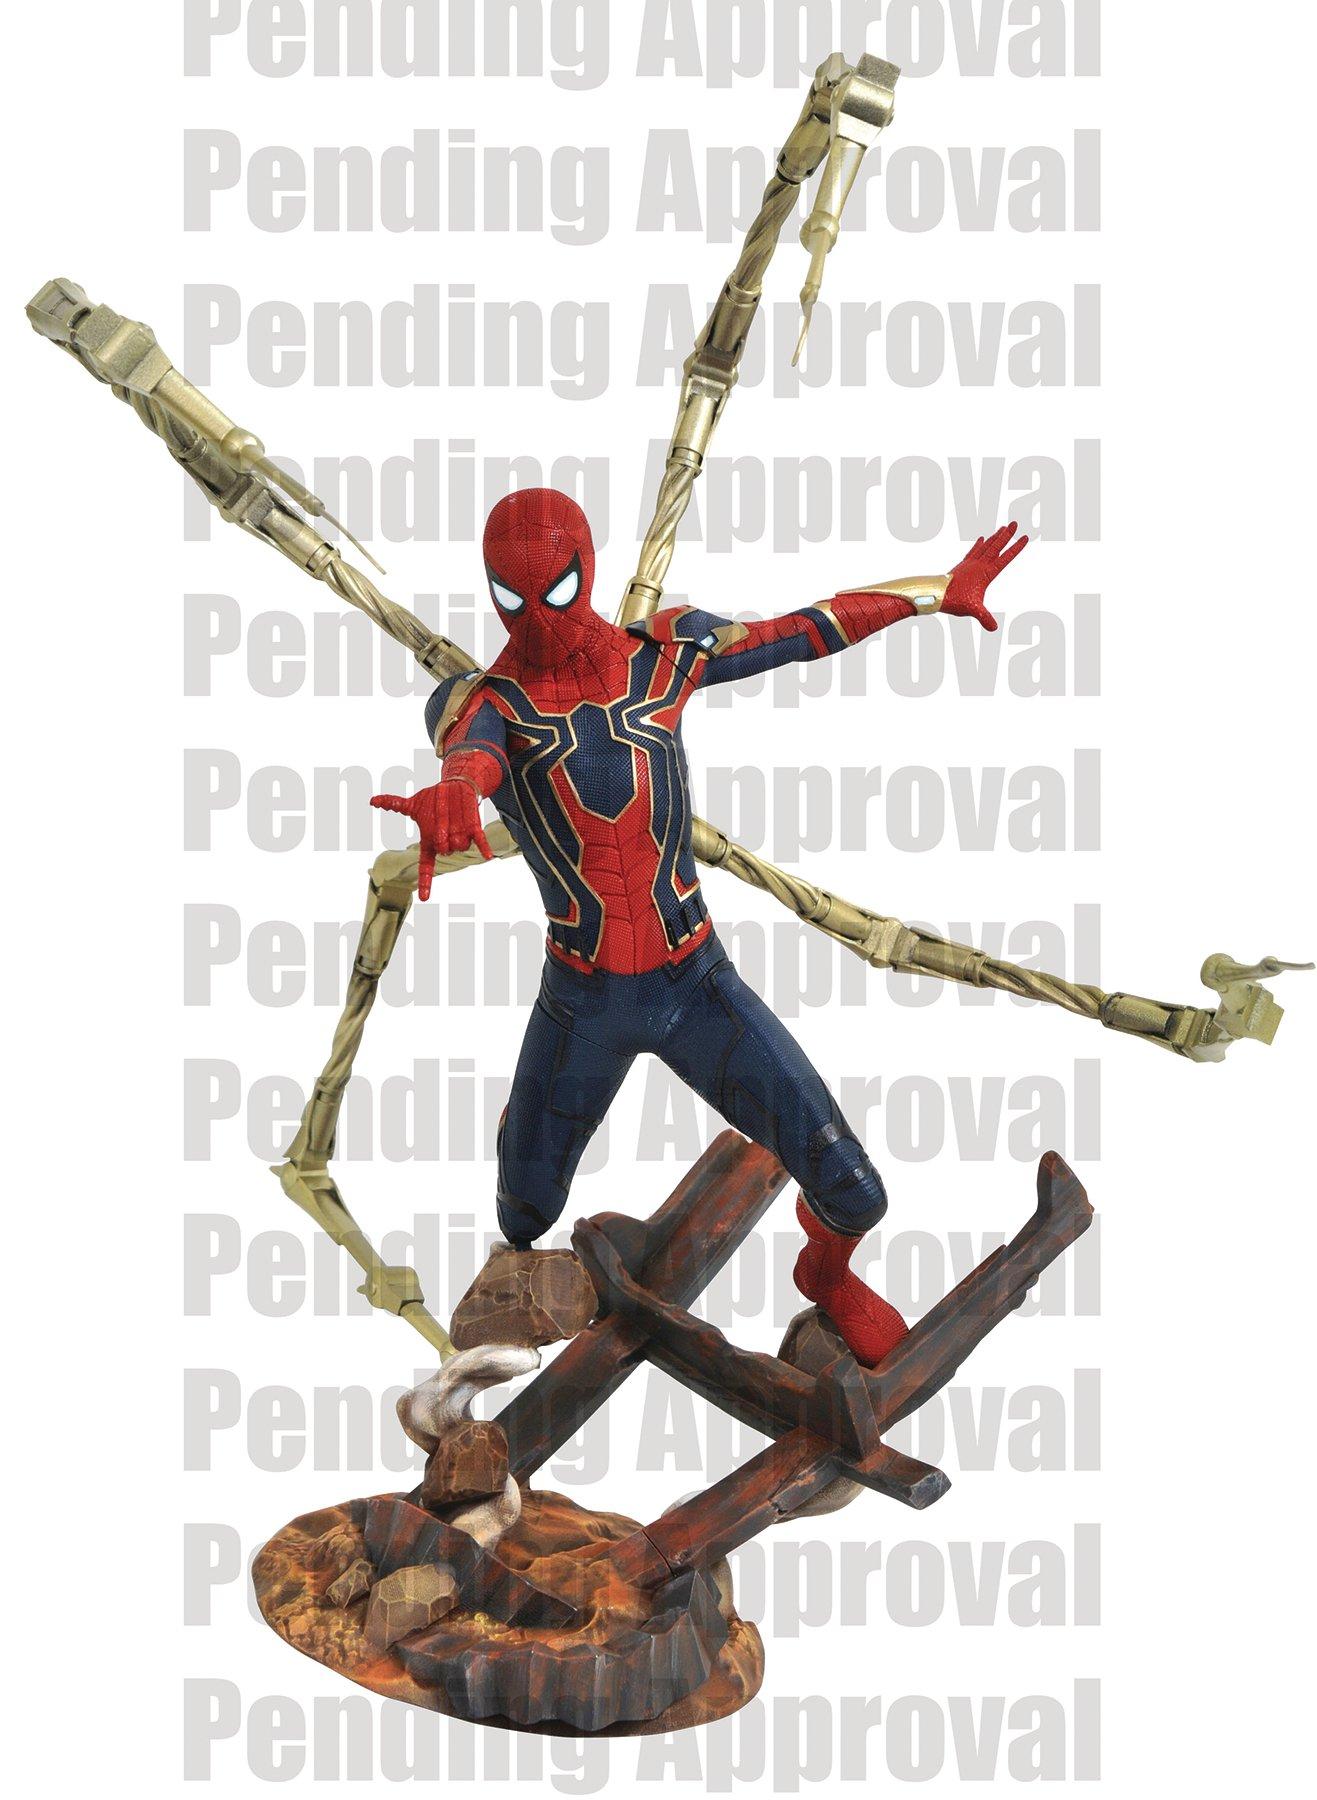 spiderman infinity war action figure